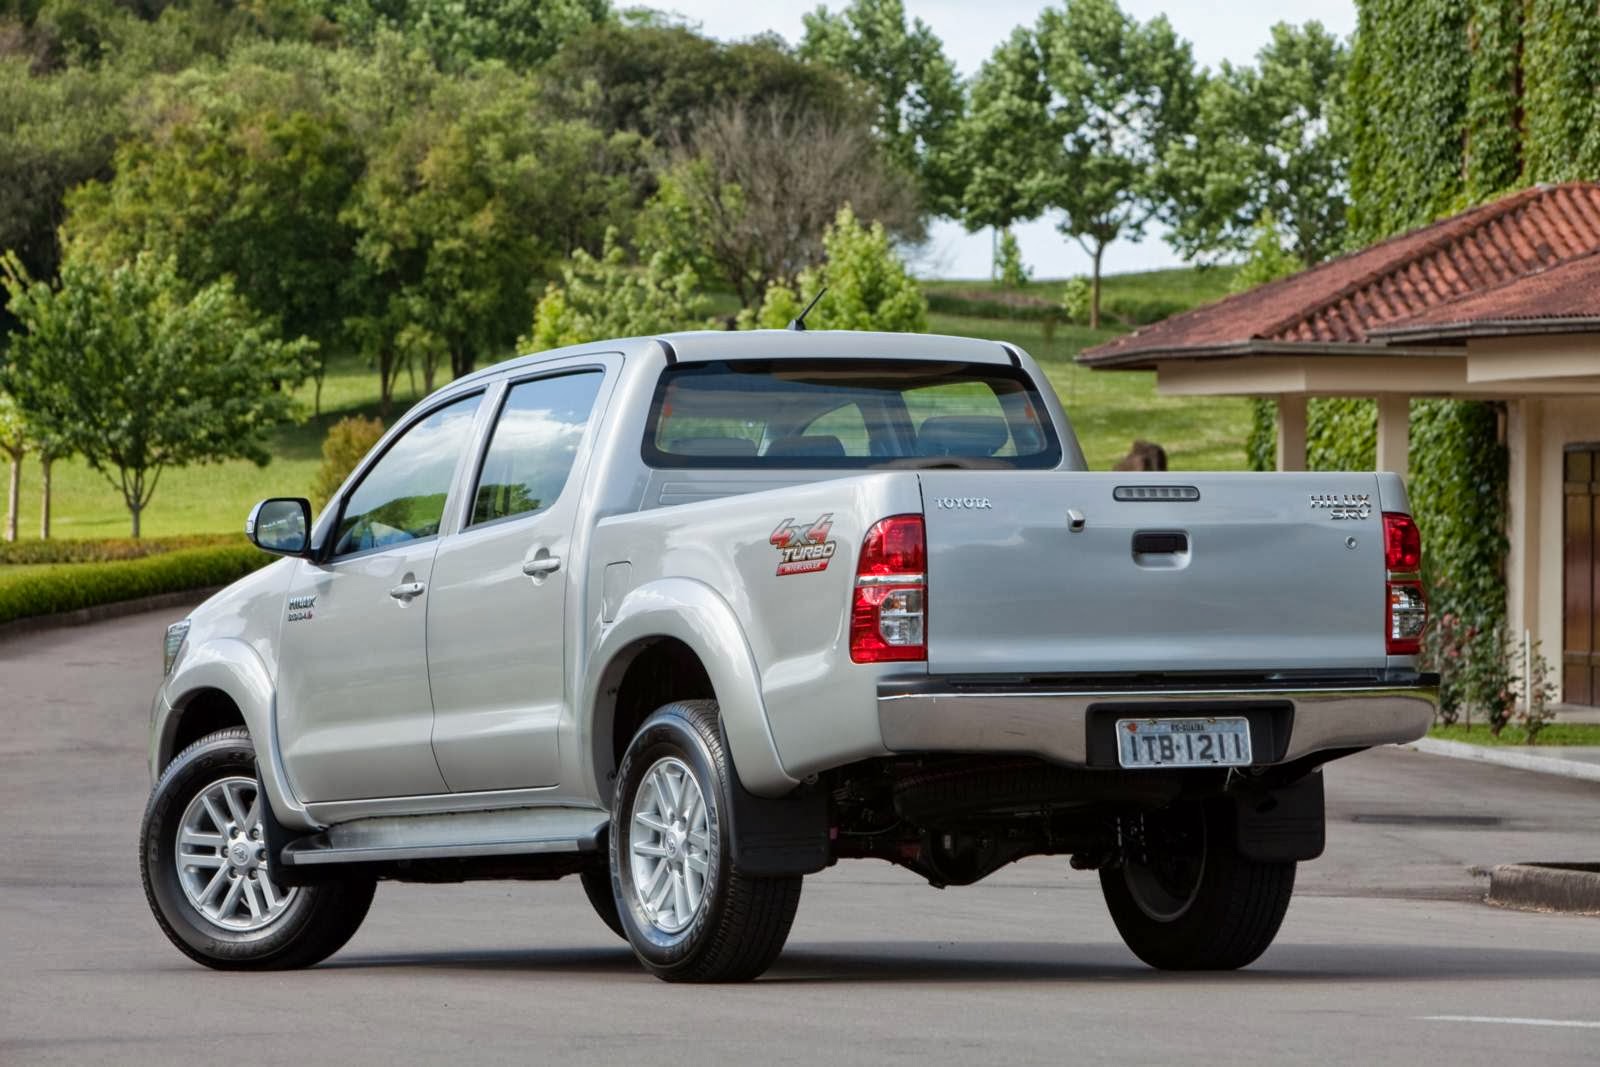 Toyota Hilux 2014 giá 450 triệu có hợp lý  VnExpress